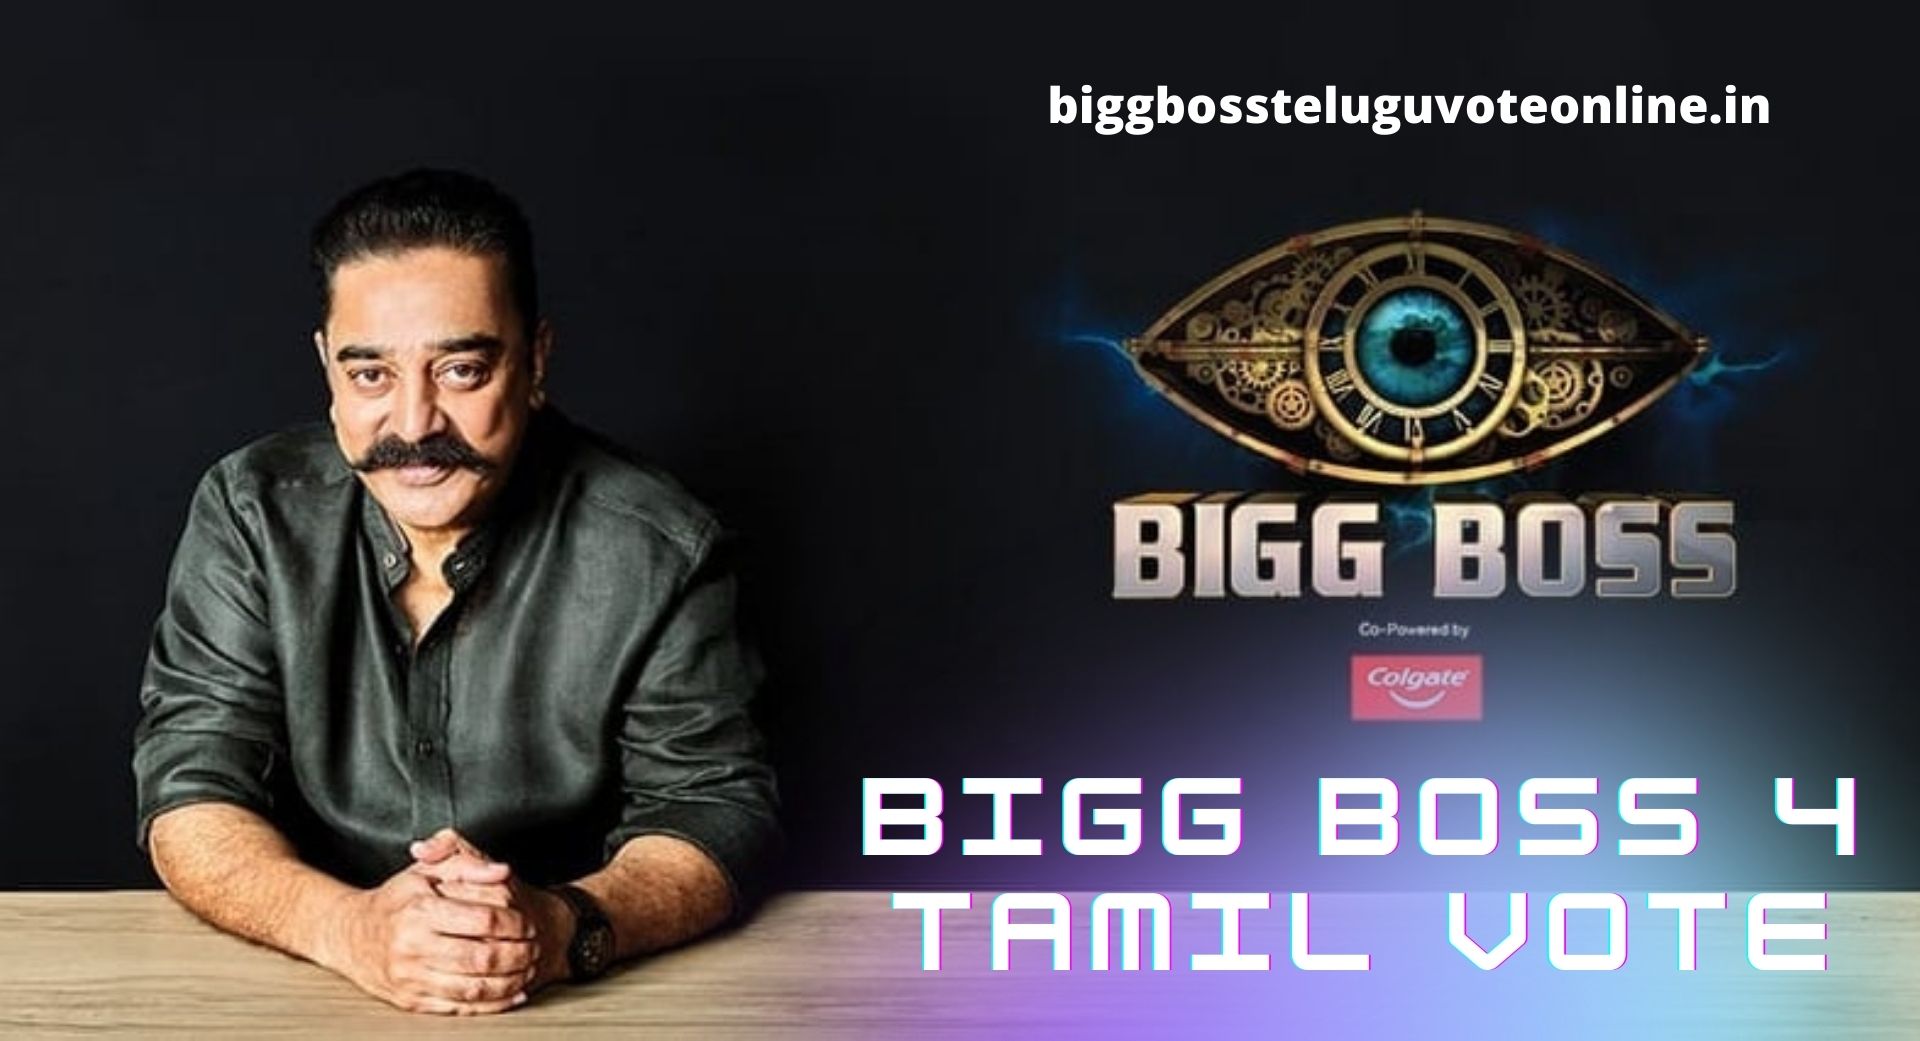 bigg boss 3 tamil hotstar online